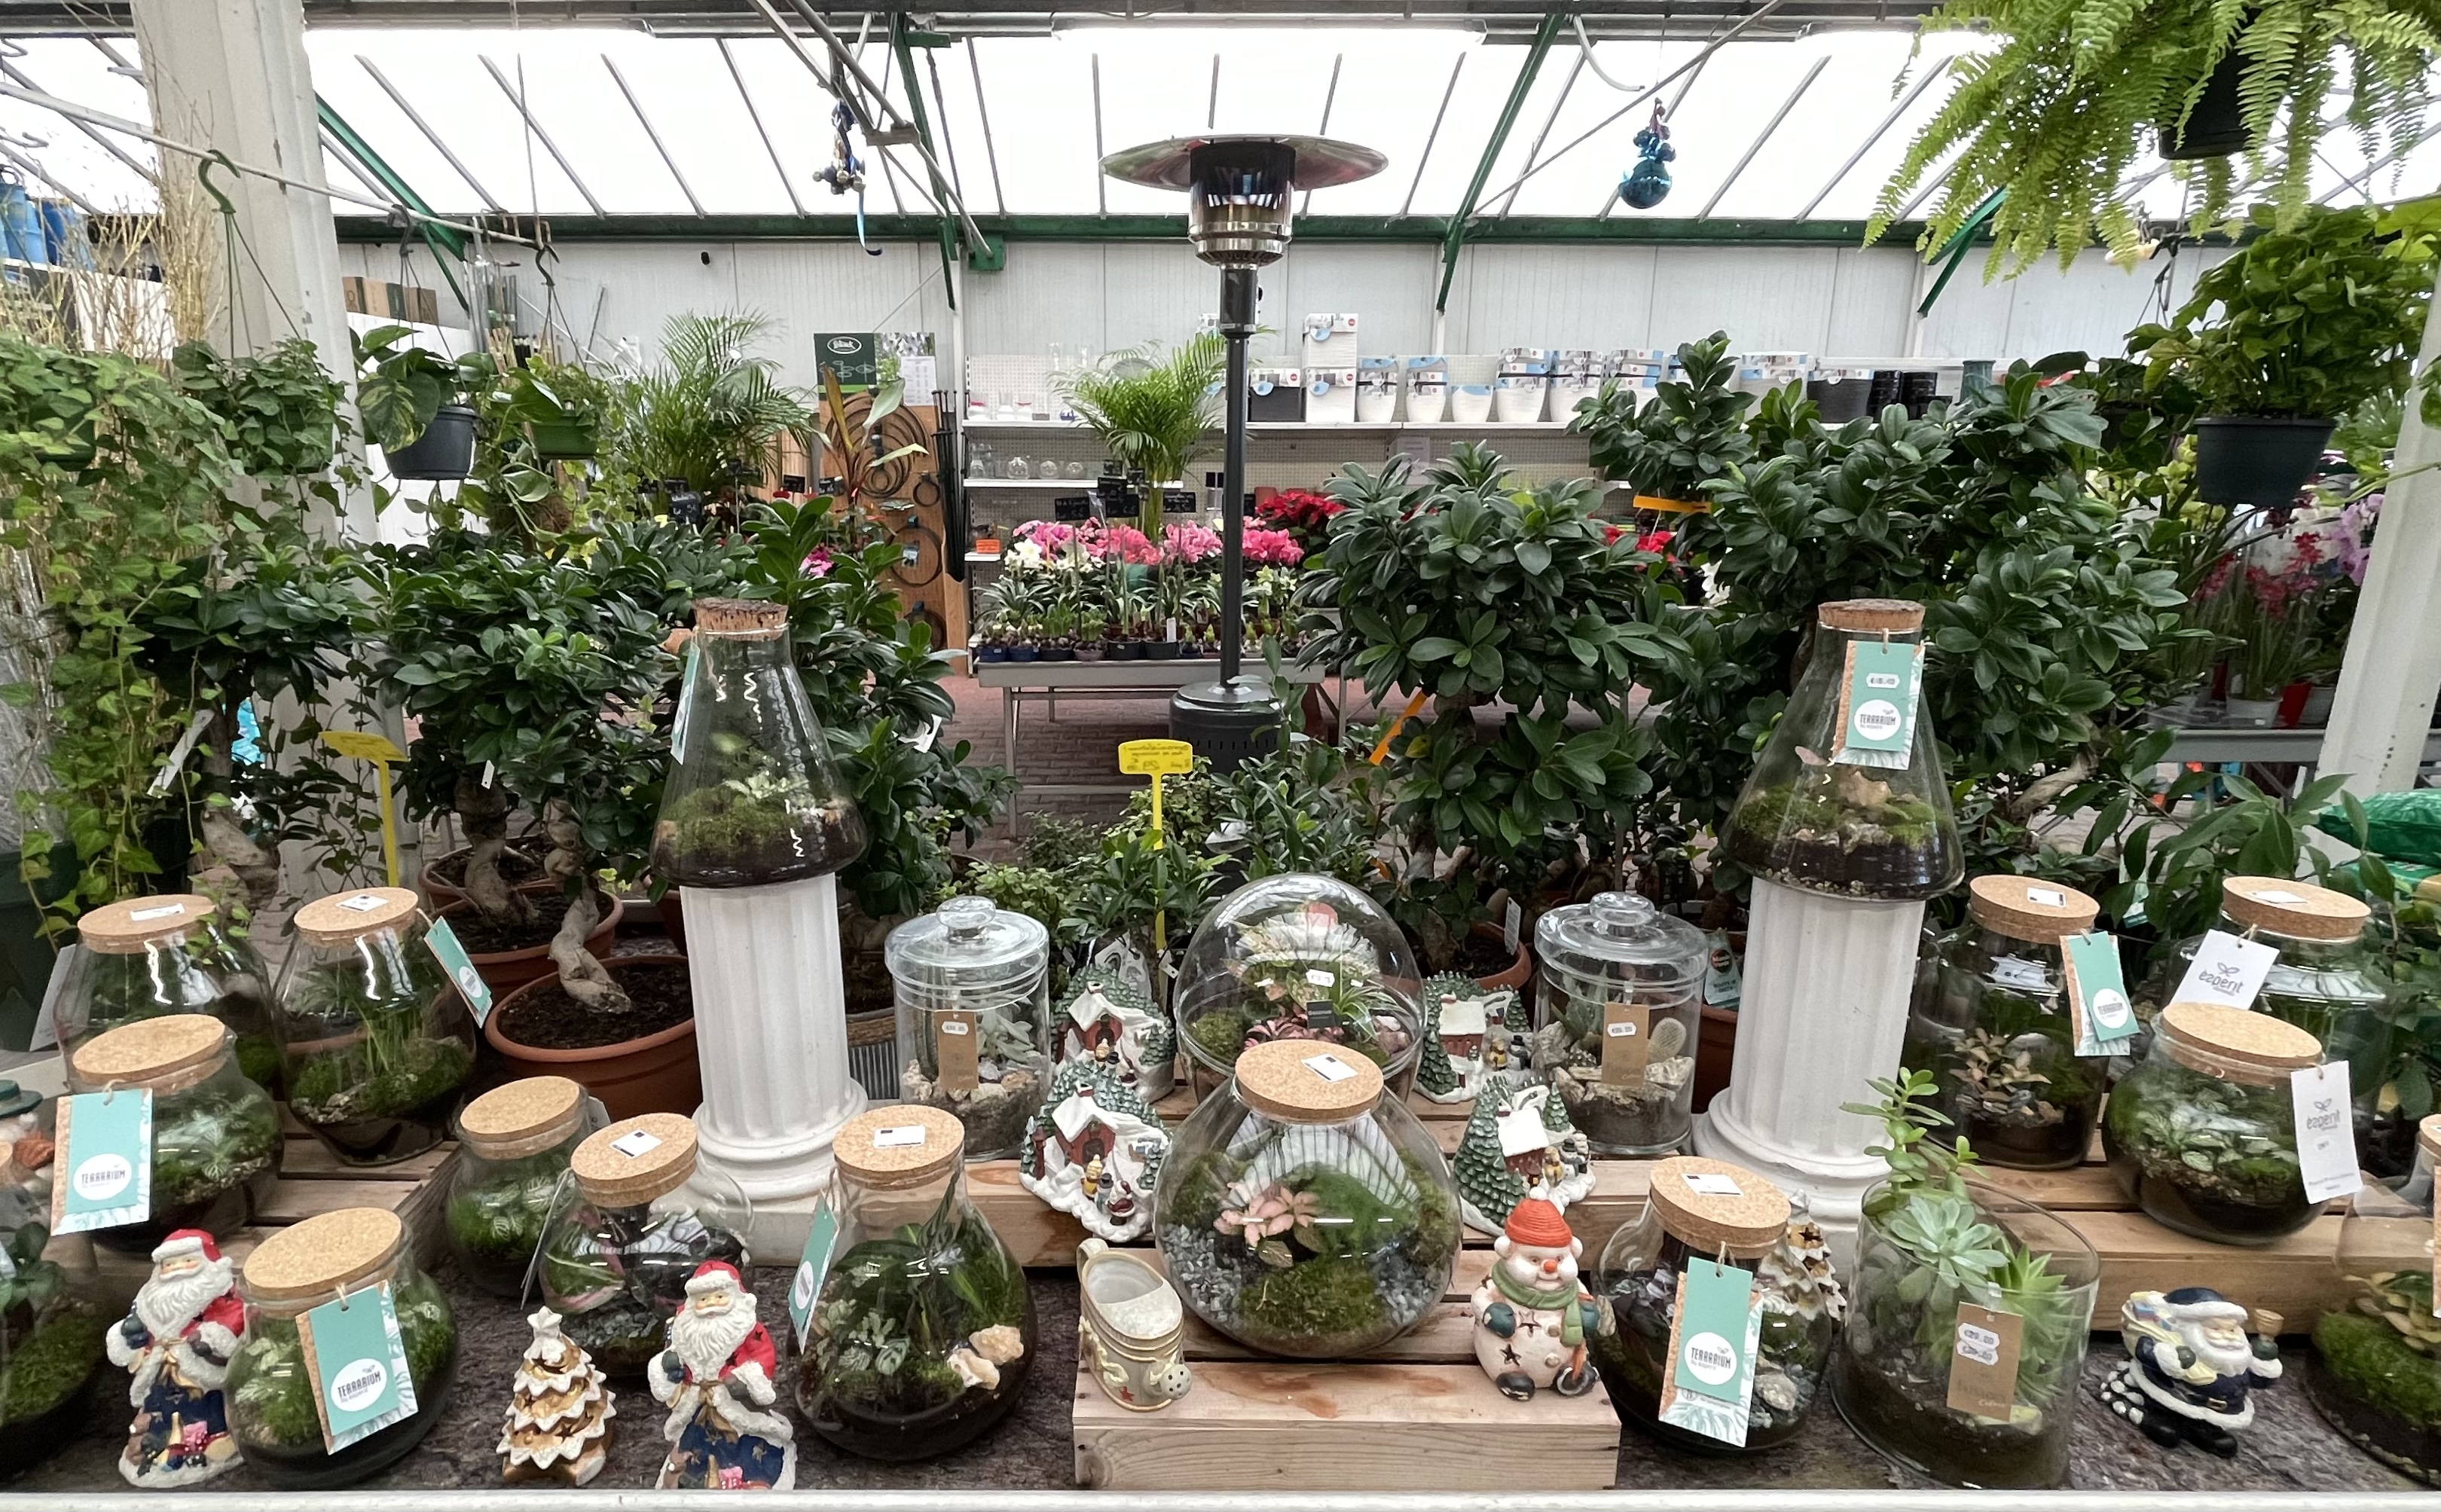 Jardinerie et fleuriste ouvert depuis printemps 1988 sue axe routier important avec site marchand de vente en ligne.